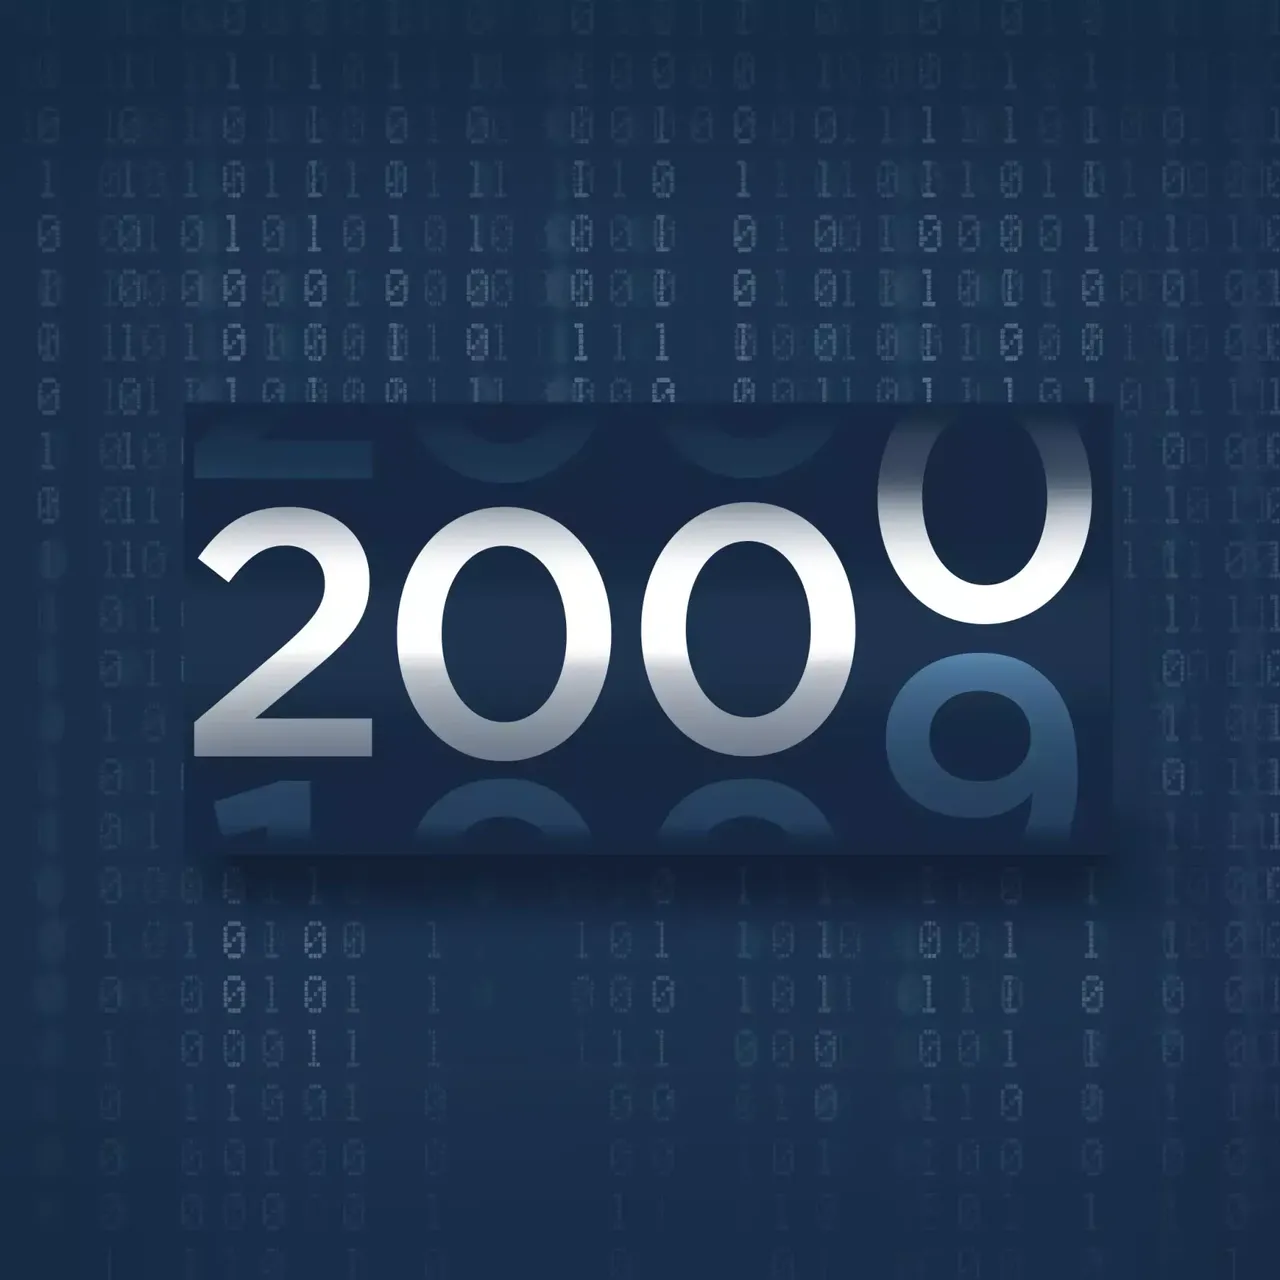 Die Grafik zeigt einen Countdown der von 1999 auf 2000 springt